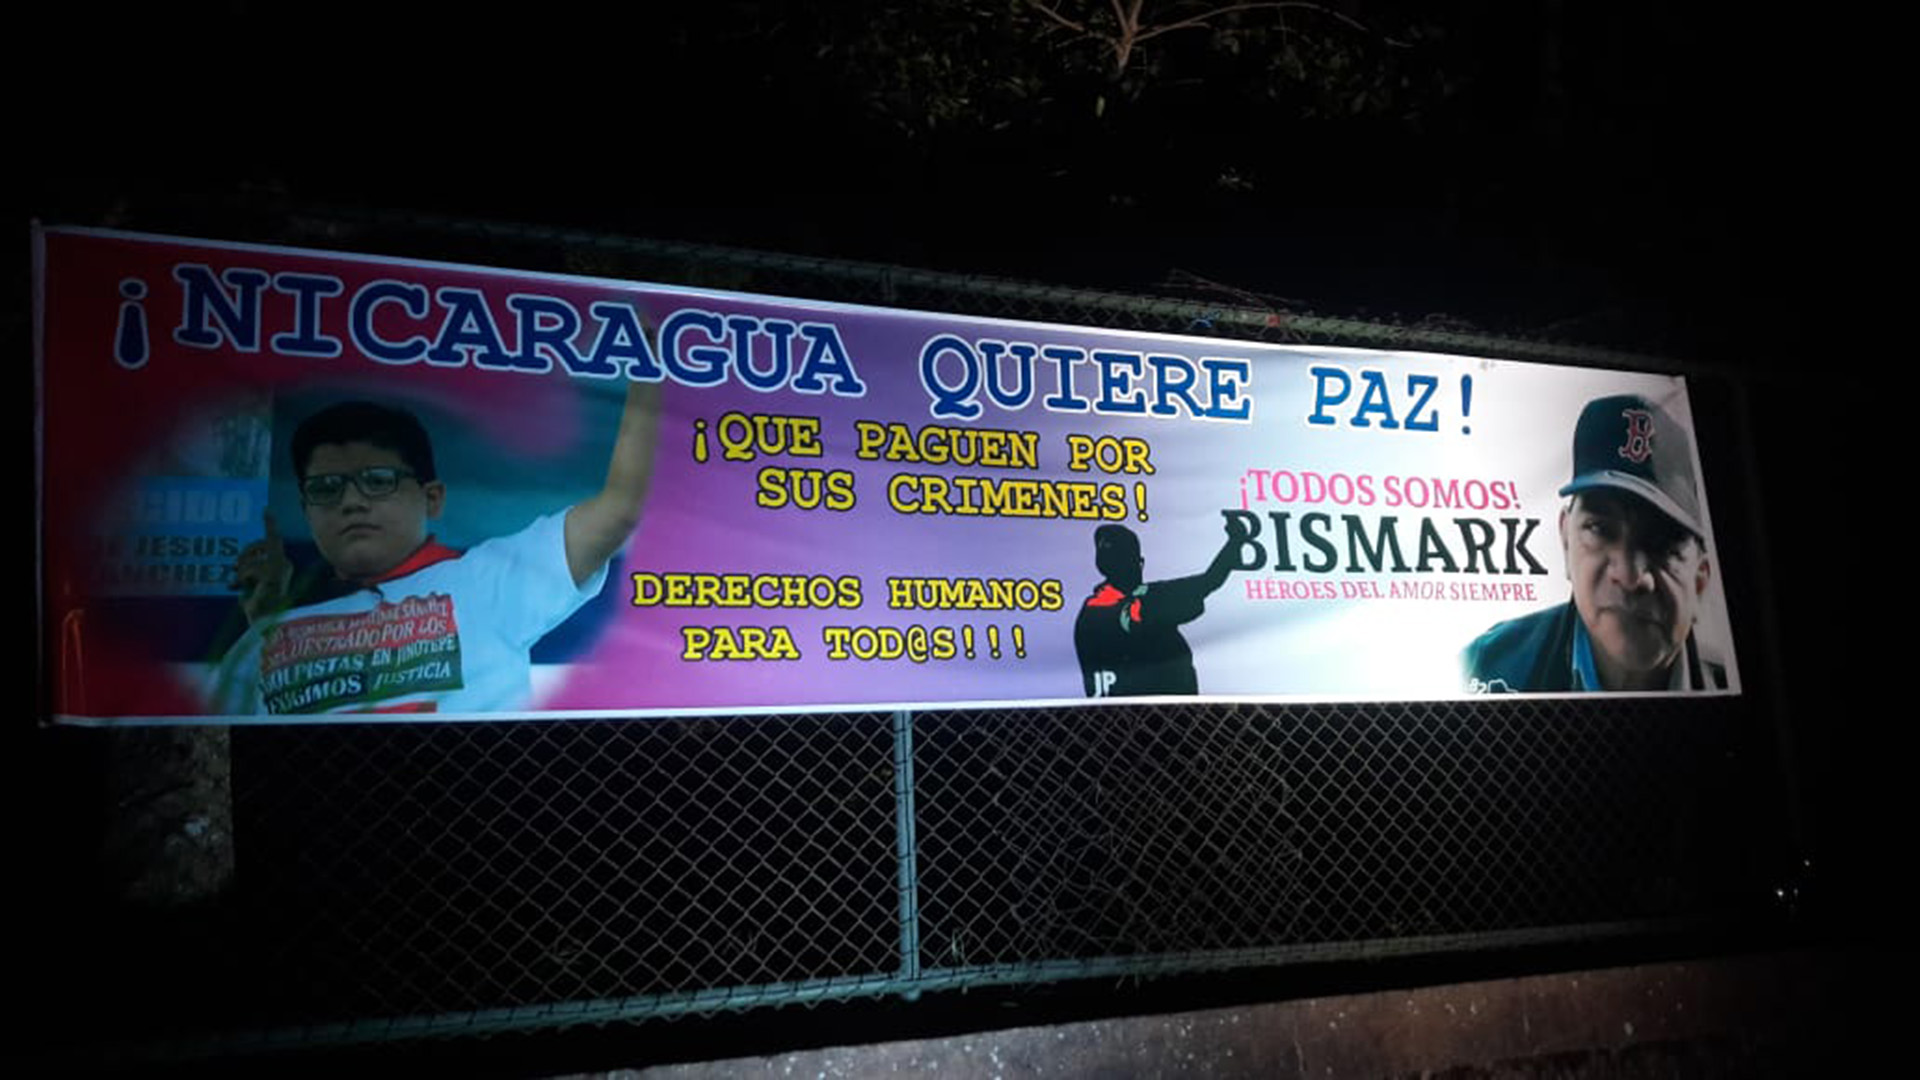 La dictadura de Daniel Ortega declaró "héroe del amor" al sandinista asesinado Bismarck Martínez, y en su nombre ha desatado una cacería entre quienes supone tuvieron alguna relación con su muerte. (Foto 19 Digital)